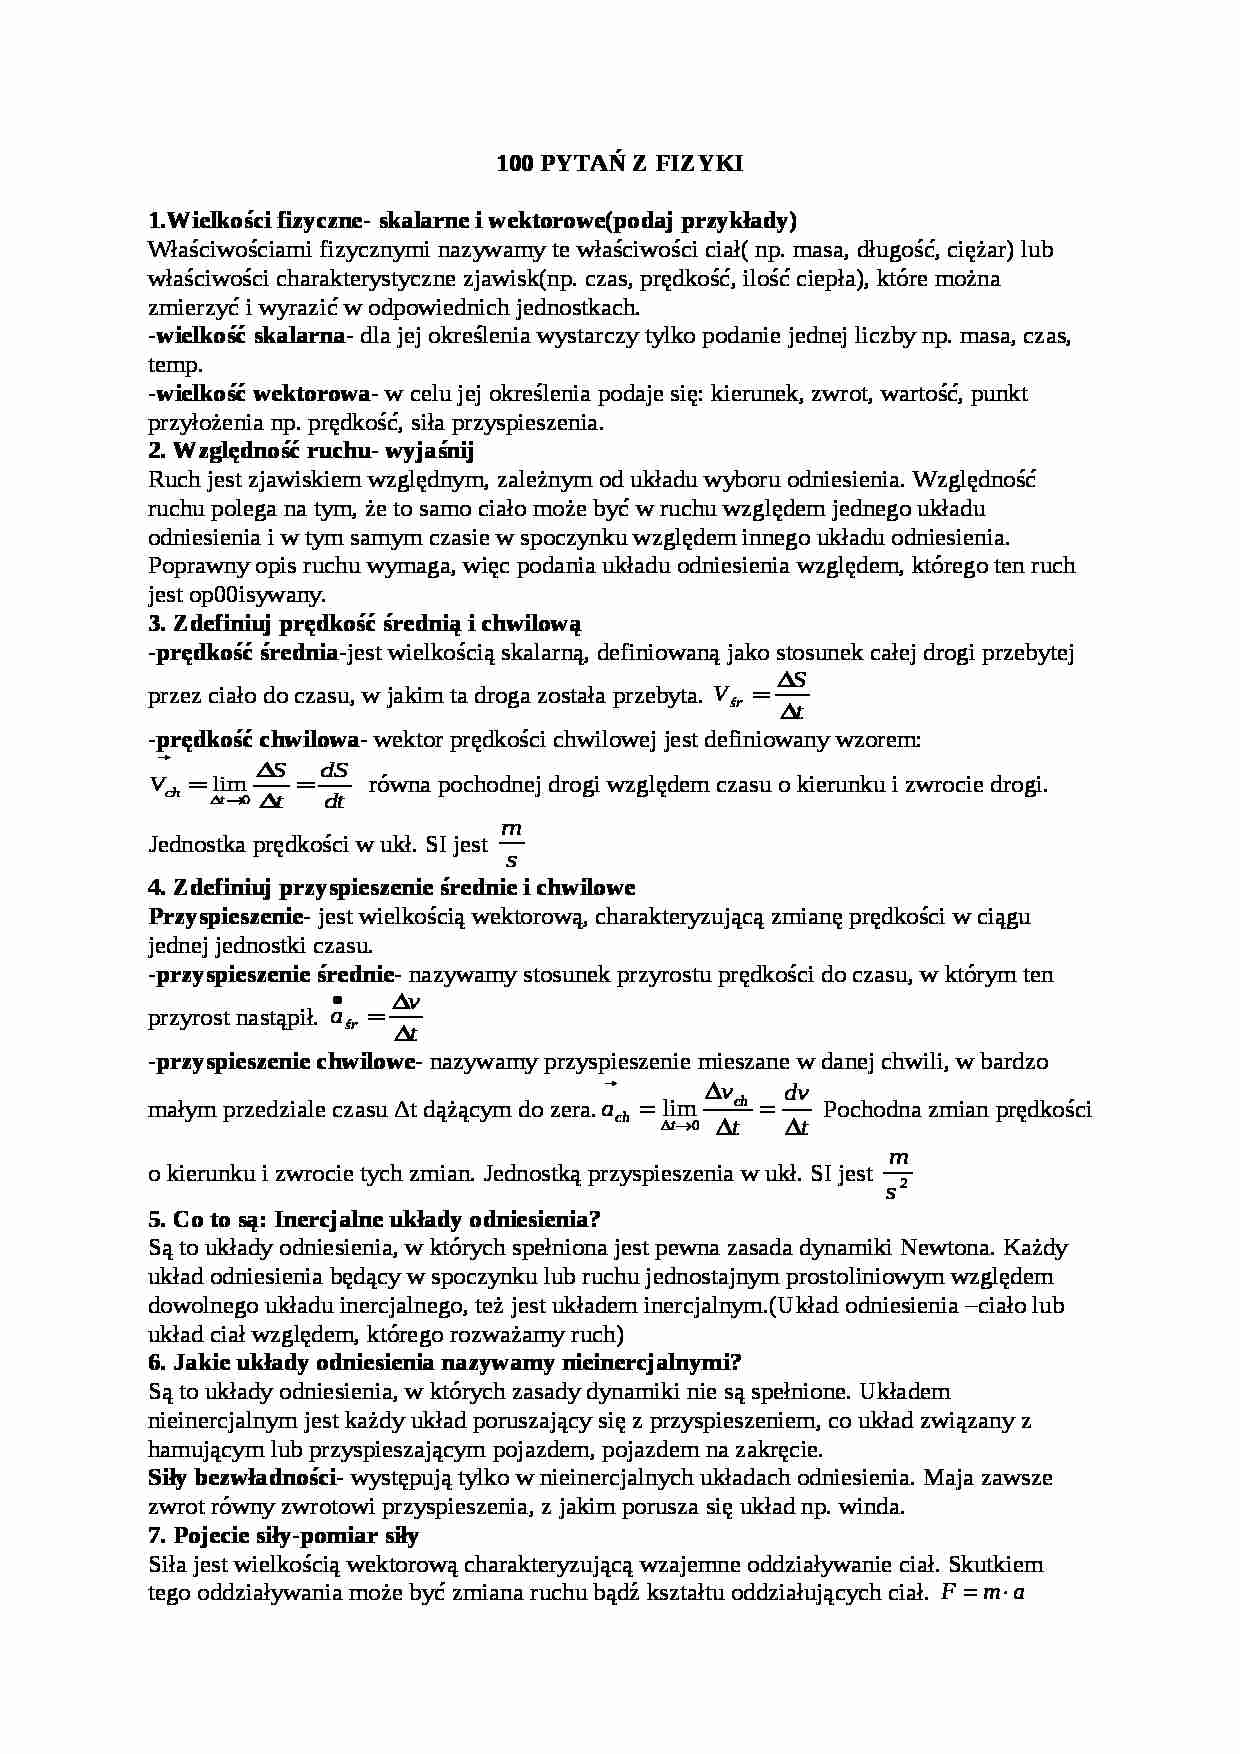 Opracowanie pytań na egzamin z fizyki - strona 1